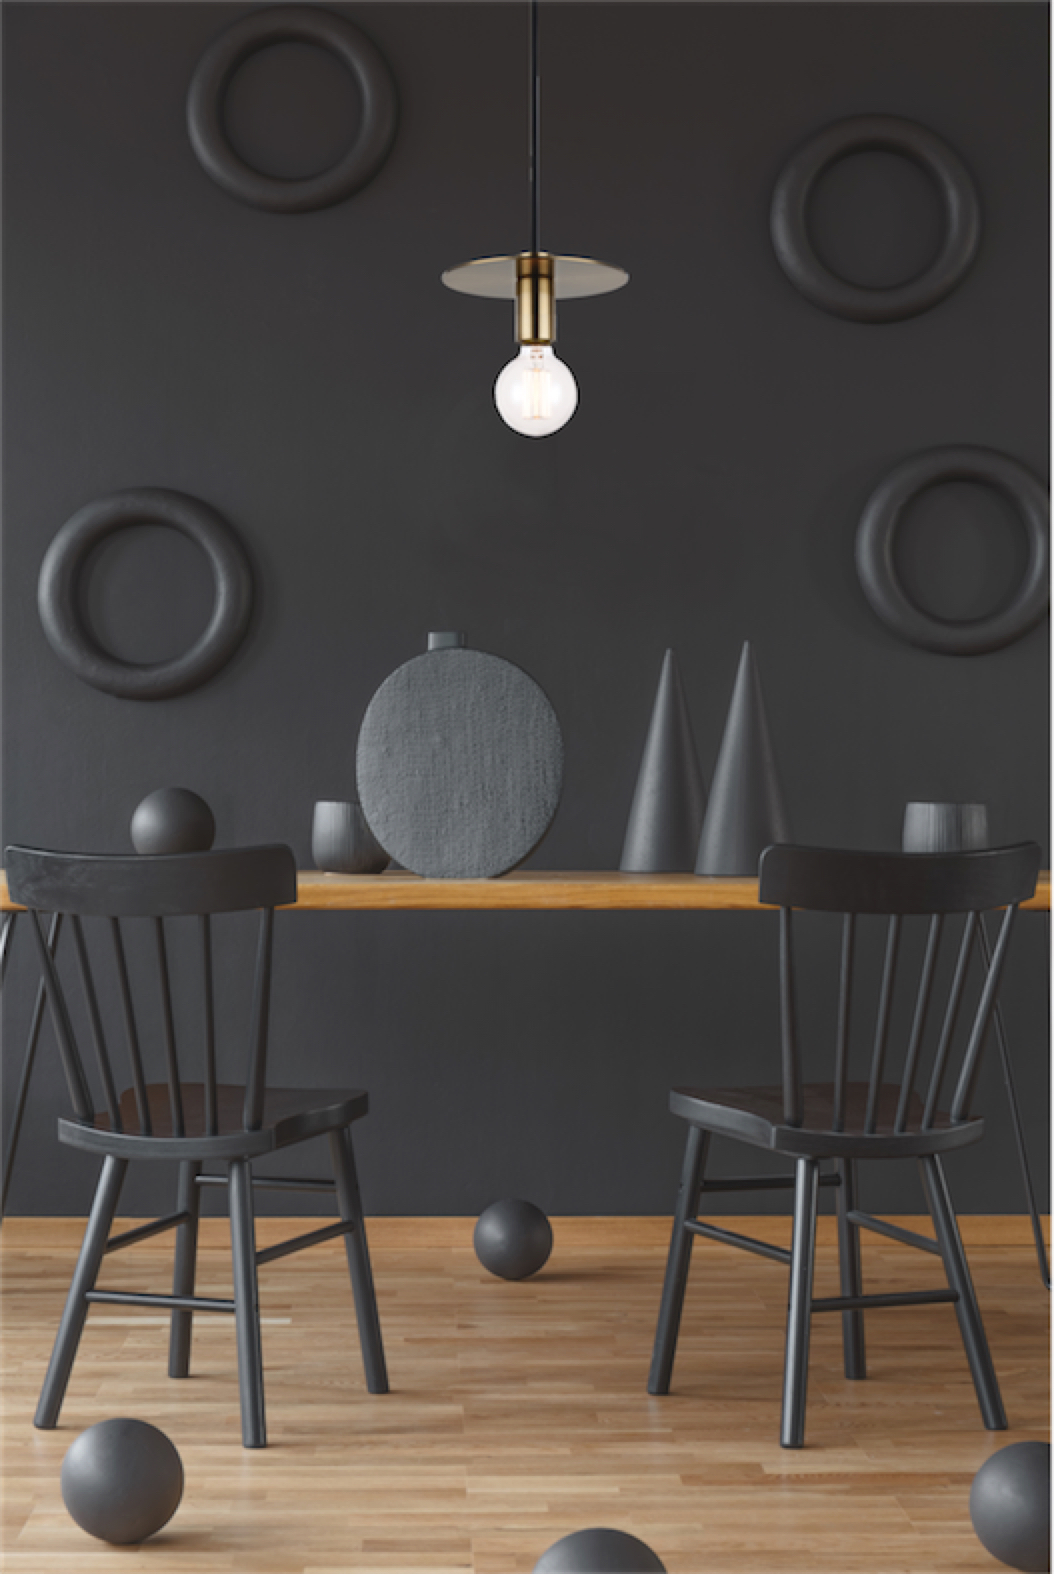 Luminaire suspendu moderne KASA Matteo C54911AGB au-dessus de la table de salle à manger en bois avec chaises noires